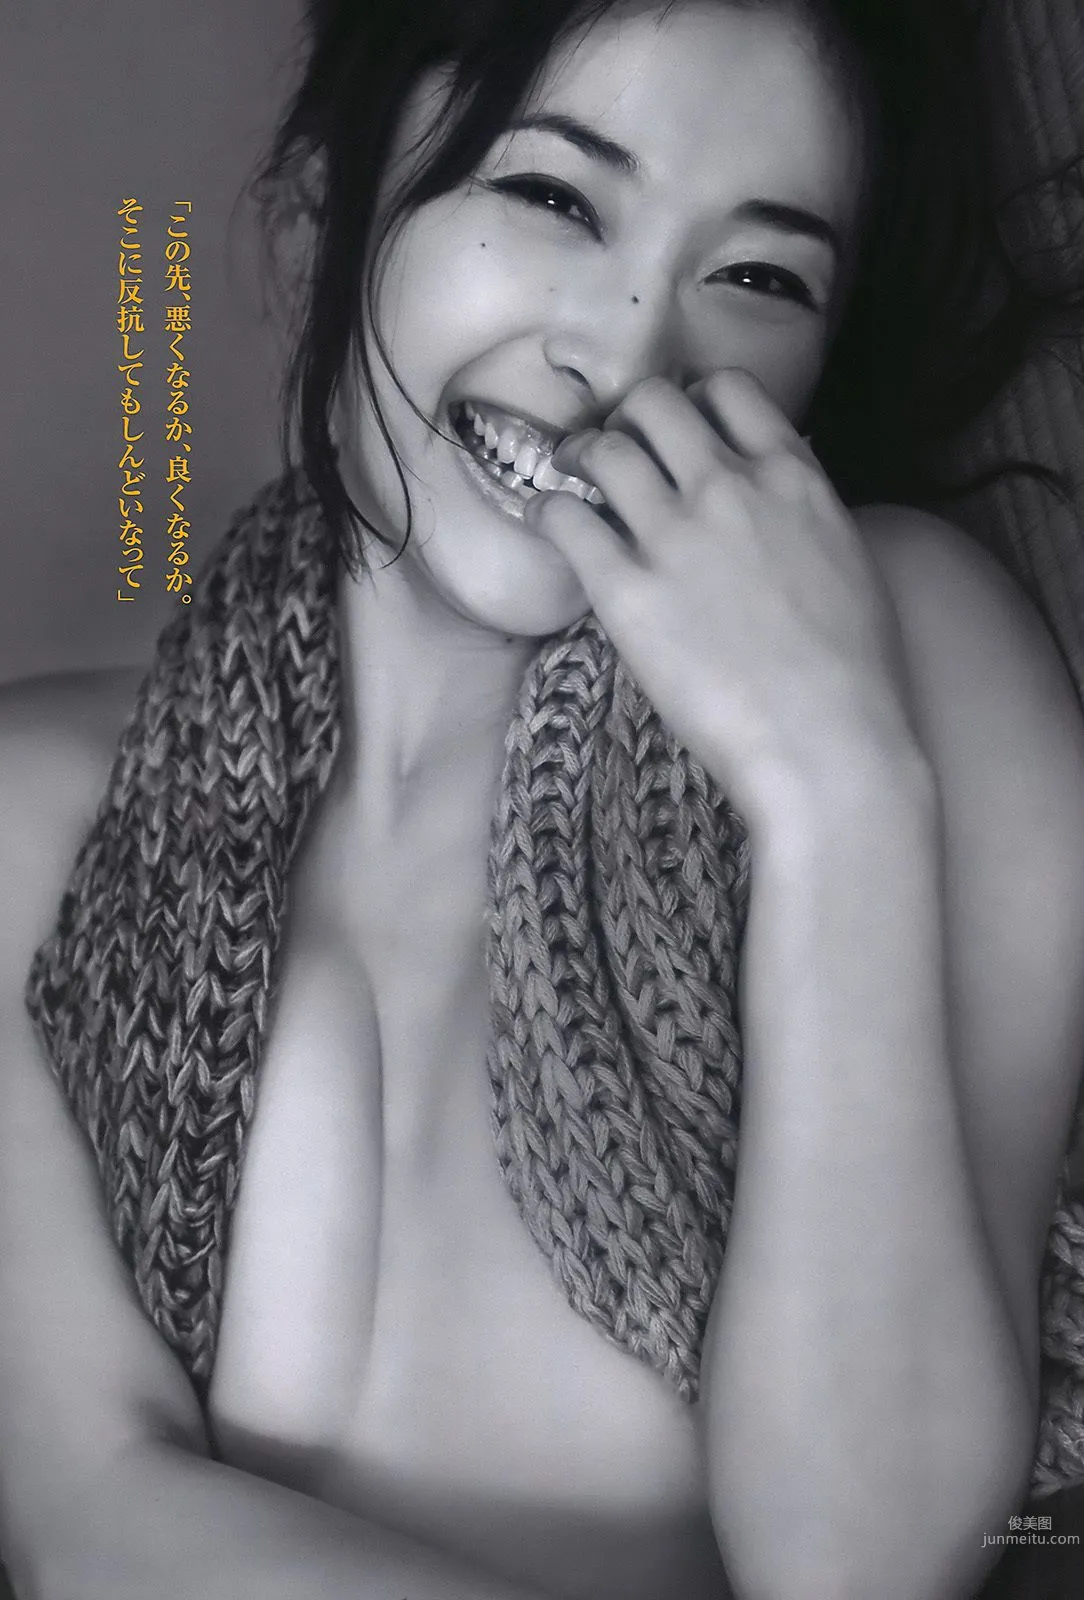 杉本有美 佐山彩香 周秀娜 中川朋美 山崎真実 [Weekly Playboy] 2011年No.10 写真杂志25